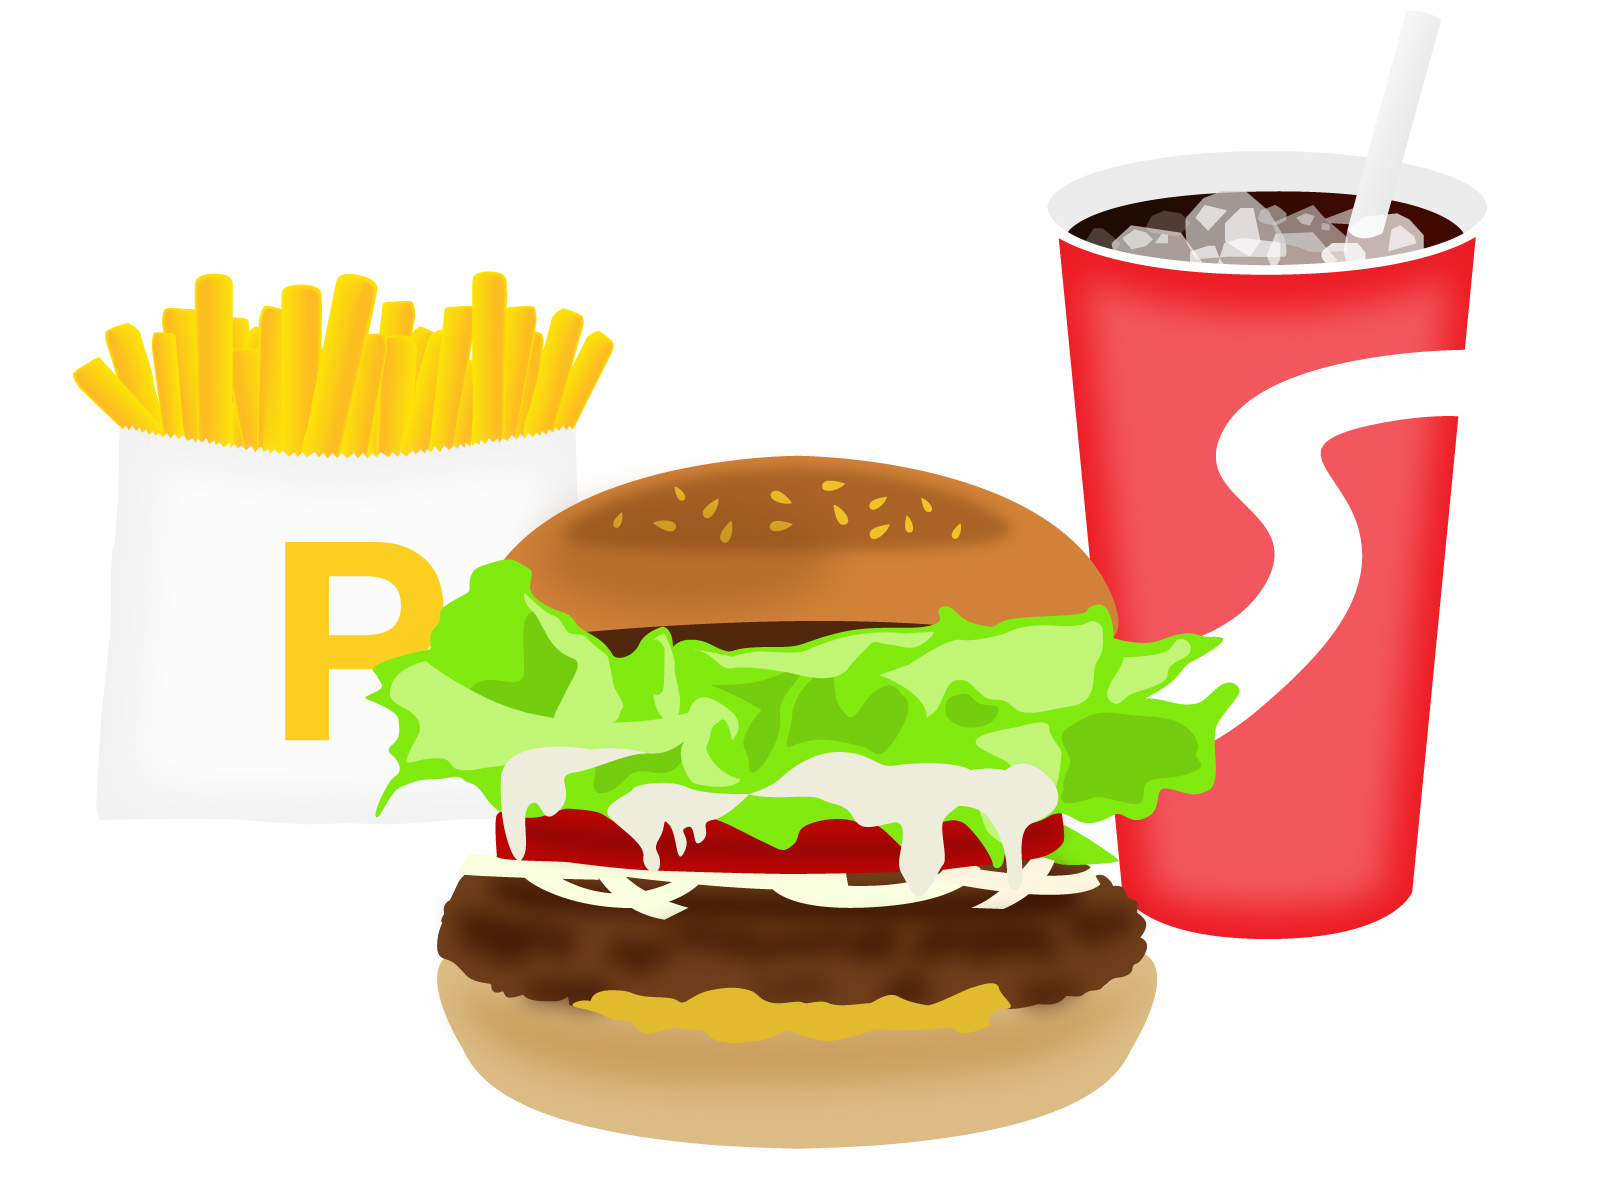 ハンバーガー、フライドポテト、赤いカップに入ったソフトドリンクがセットになったファーストフードのイラスト。